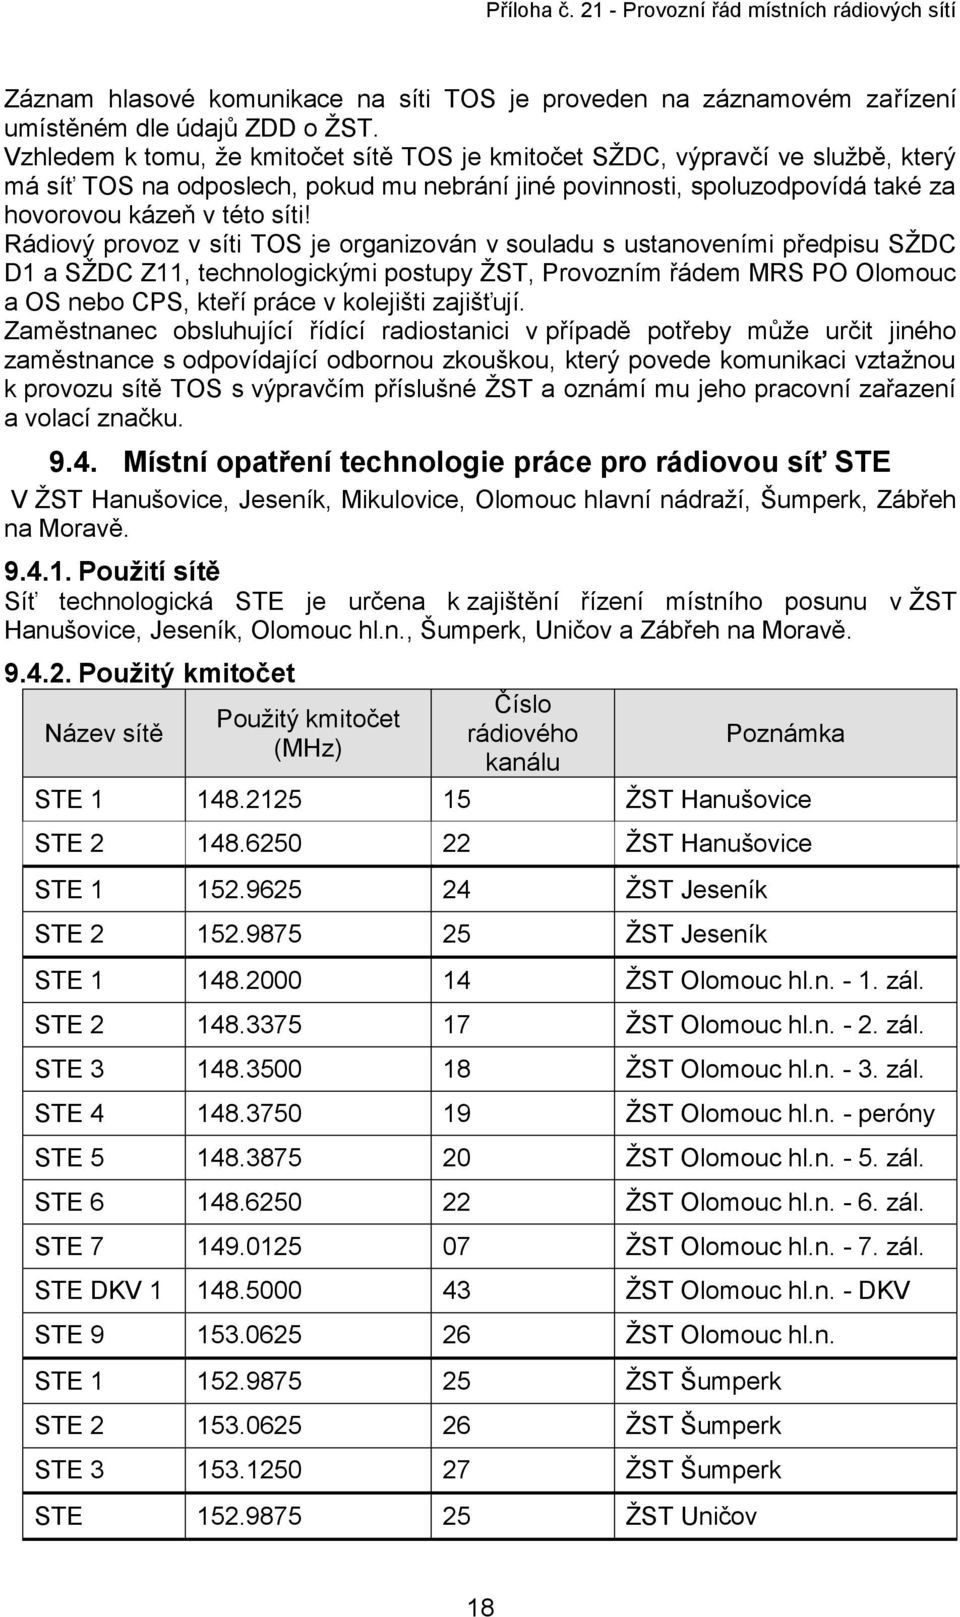 Rádiový provoz v síti TOS je organizován v souladu s ustanoveními předpisu SŽDC D1 a SŽDC Z11, technologickými postupy ŽST, Provozním řádem MRS PO Olomouc a OS nebo CPS, kteří práce v kolejišti